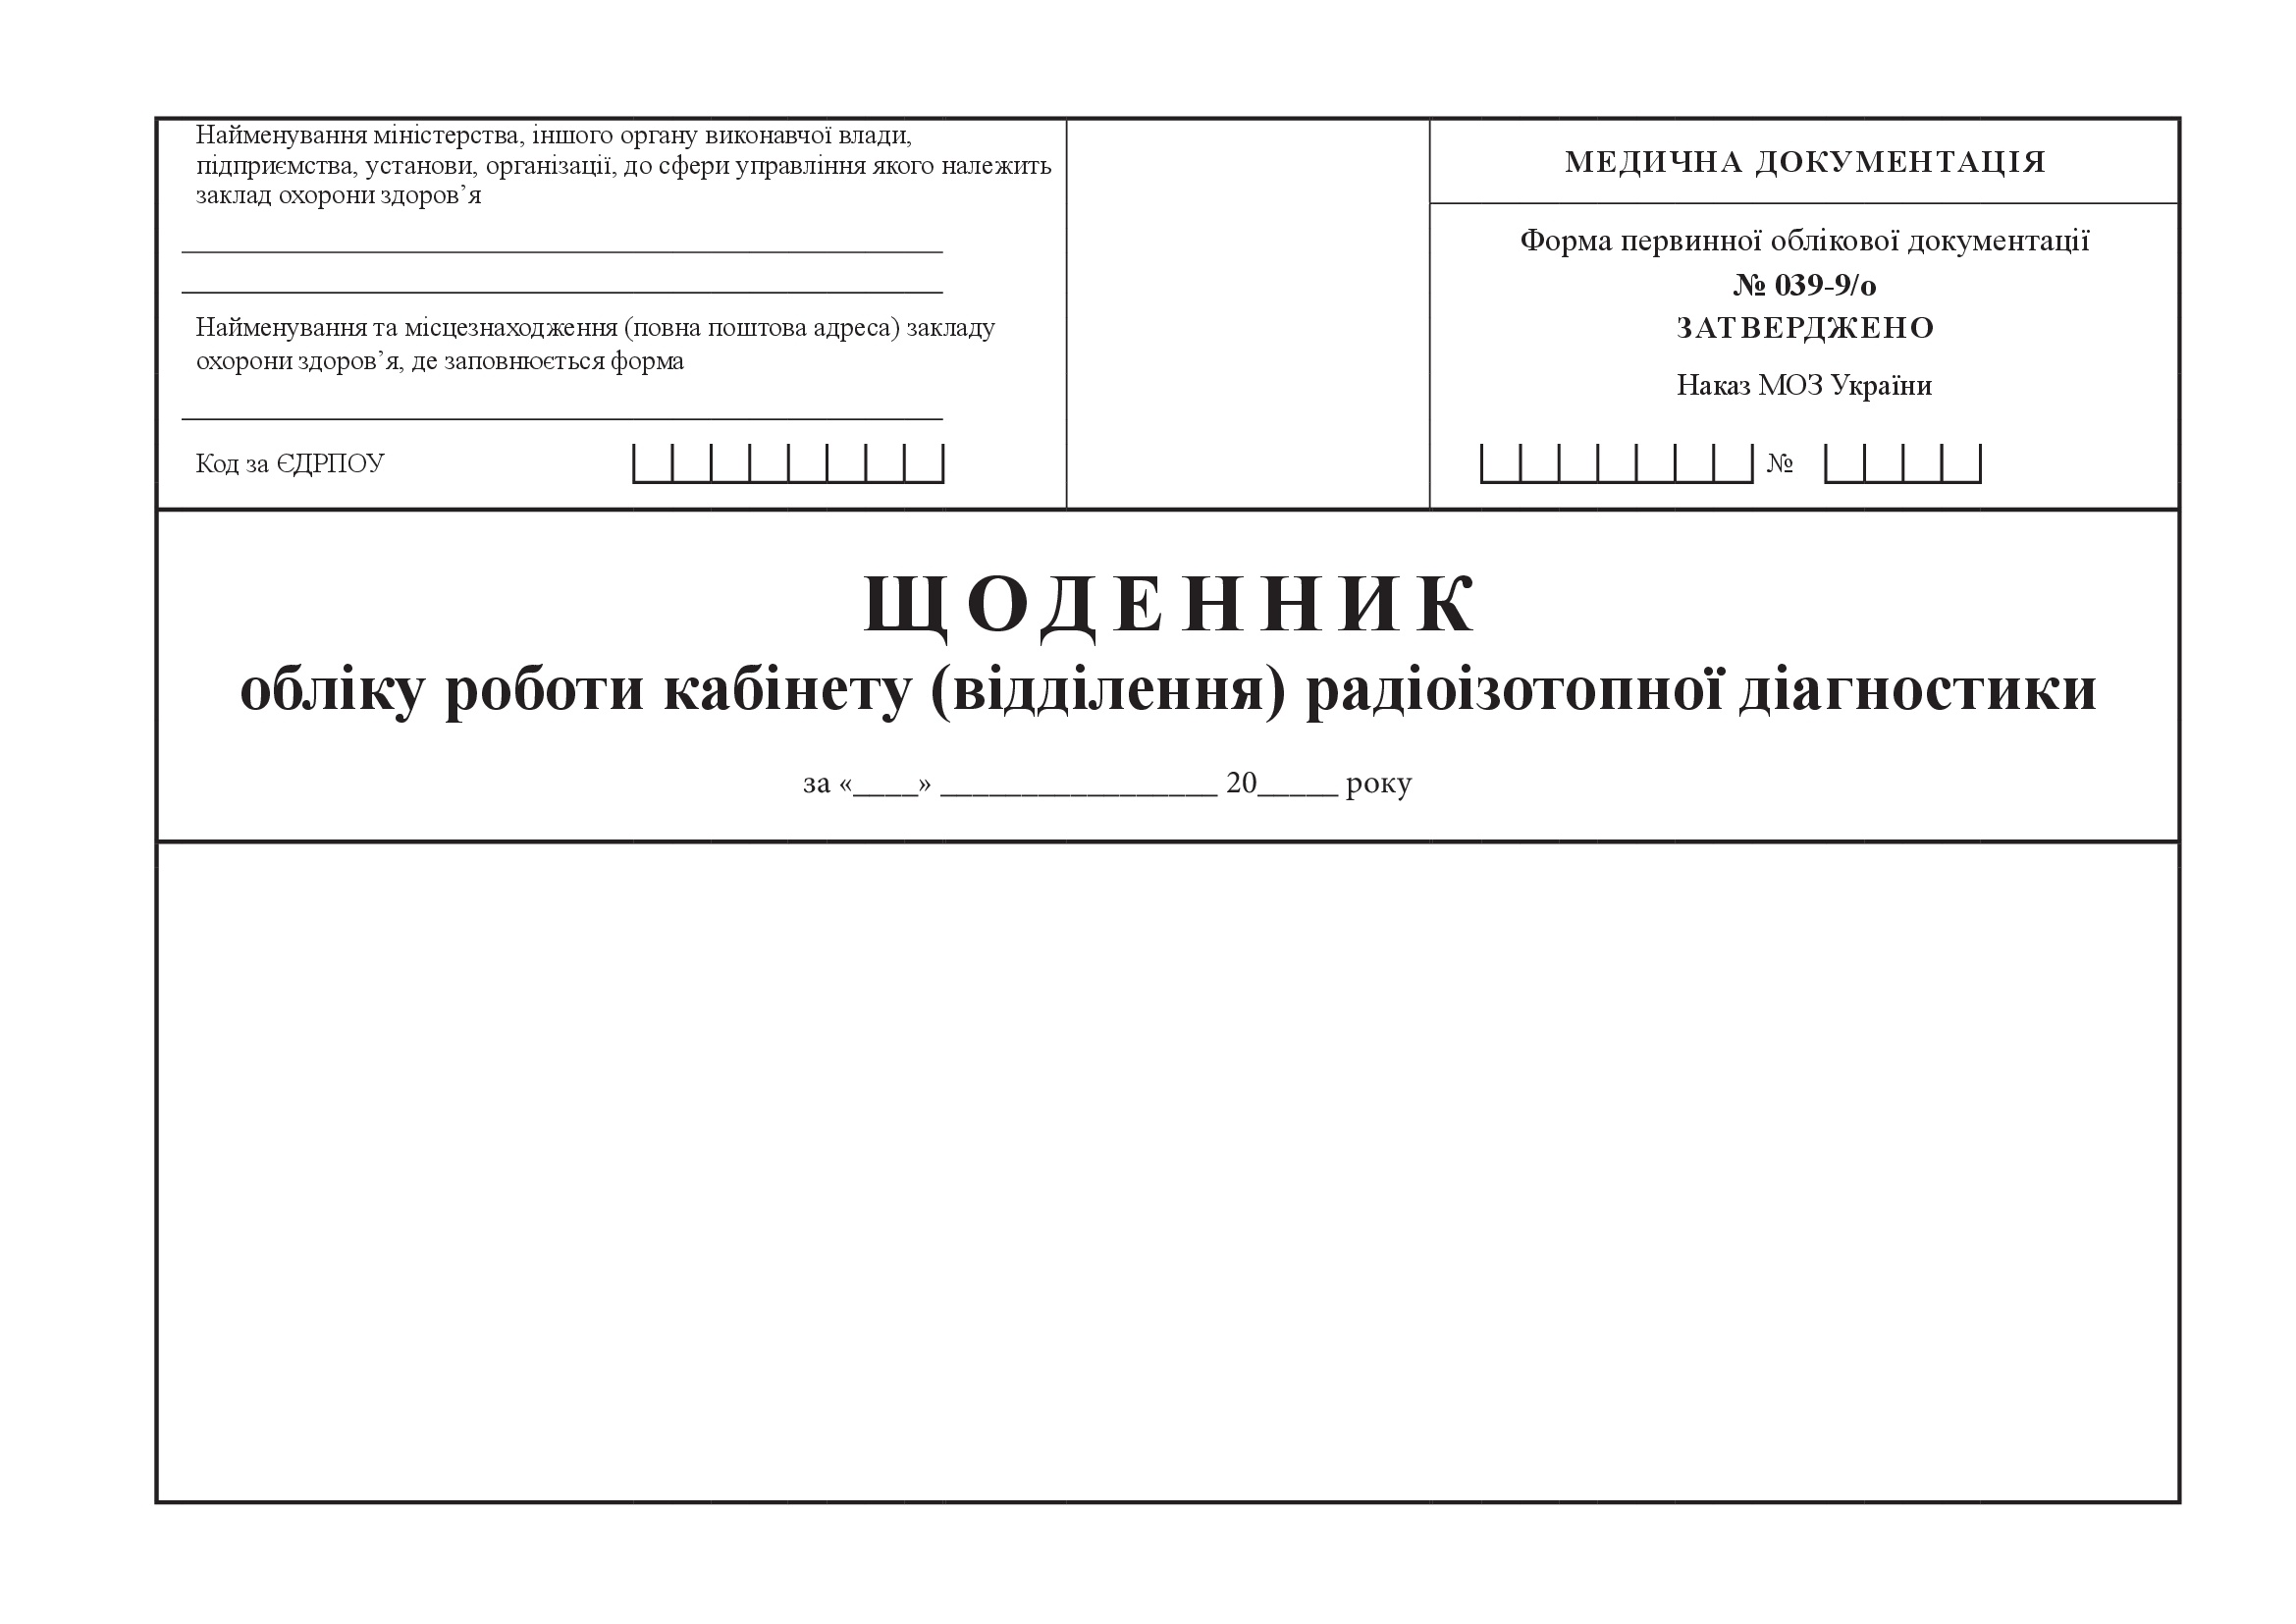 Щоденник обліку роботи кабінету (відділення) радіоізотопної діагностики, форма 039-9/о. Автор — Міністерство охорони здоров'я України. 